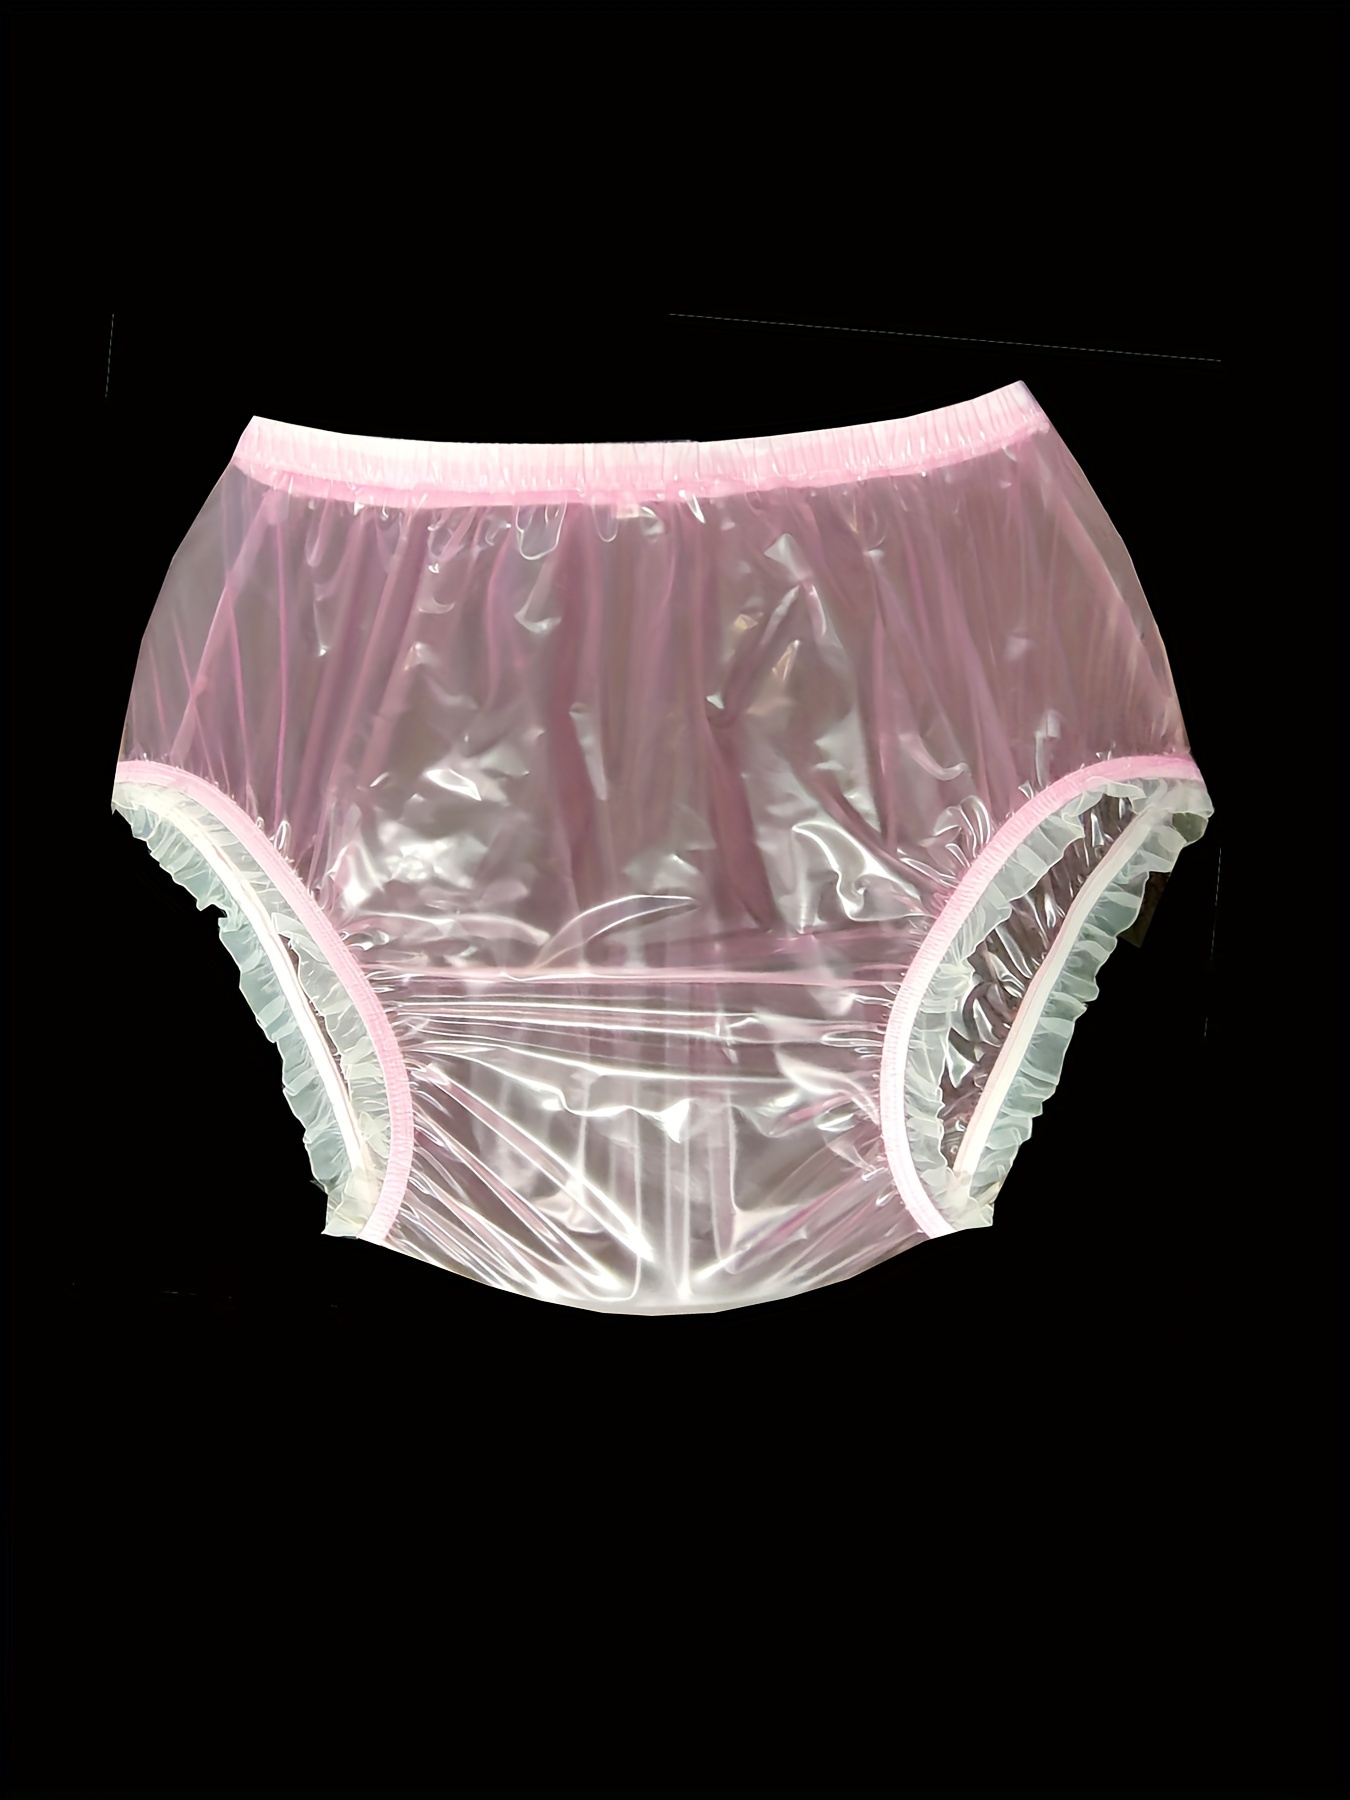 Top PVC incontinence couche pantalon en caoutchouc adulte bébé rose